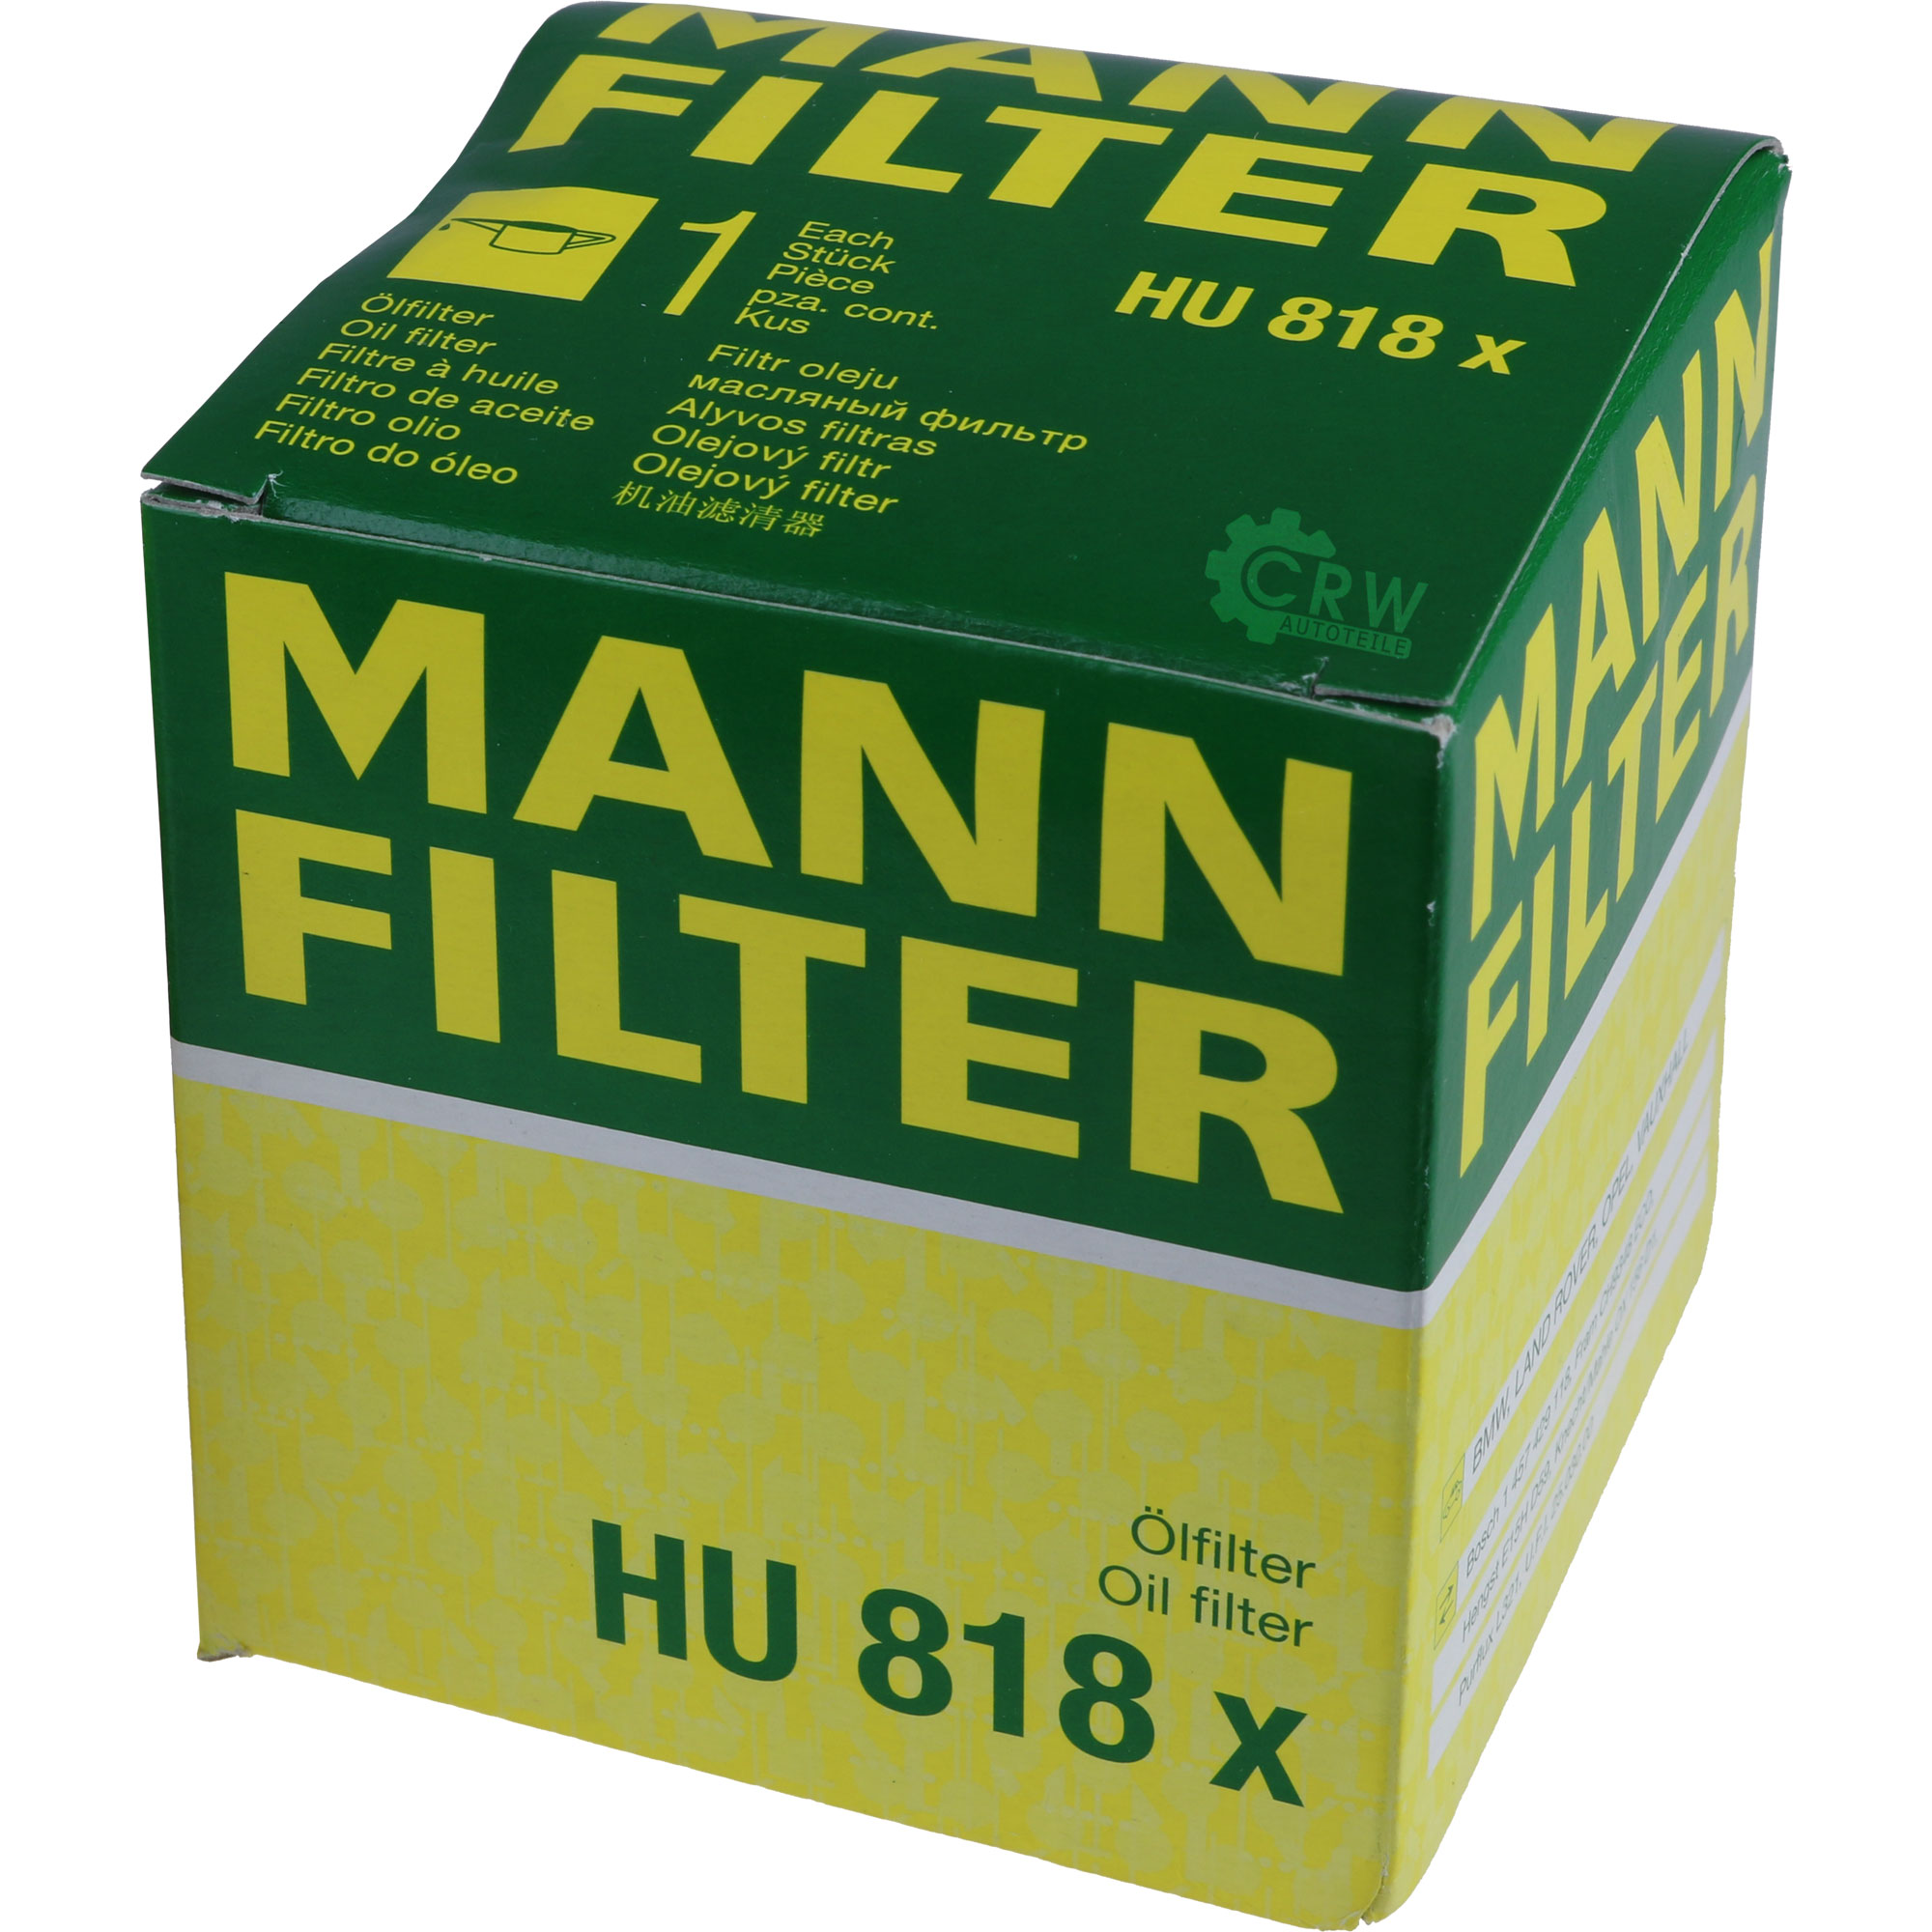 MANN-FILTER Ölfilter HU 818 x Oil Filter